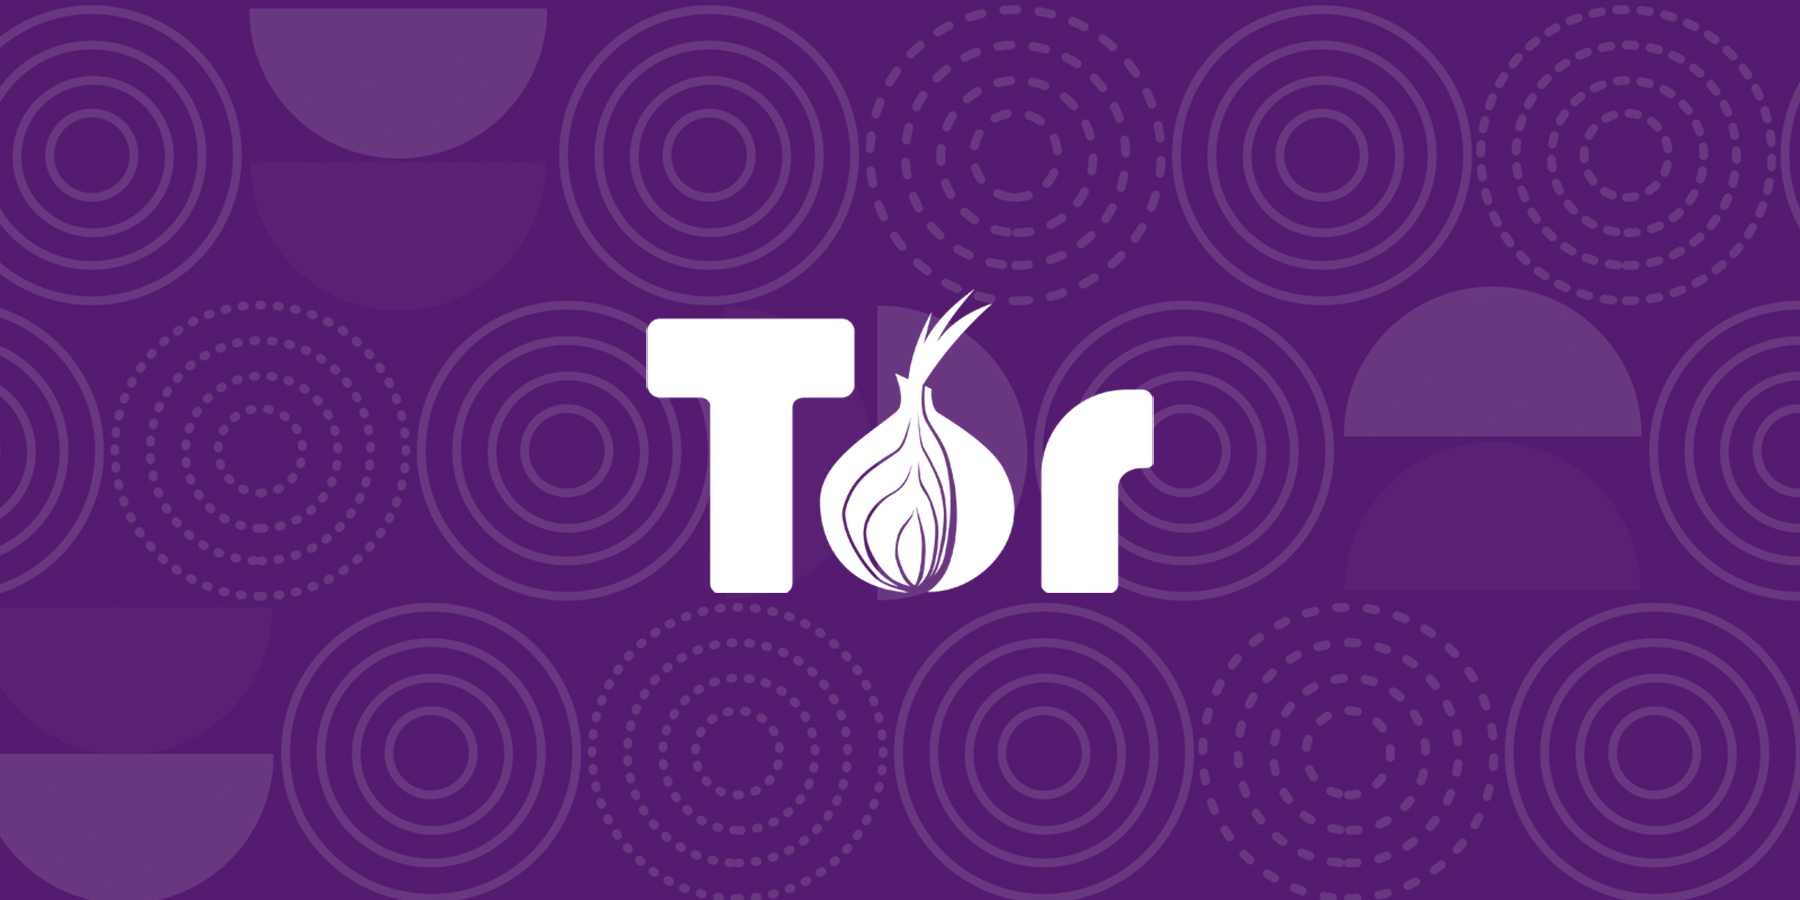 Главные недостатки Биткоина. Логотип платформы Tor. Фото.